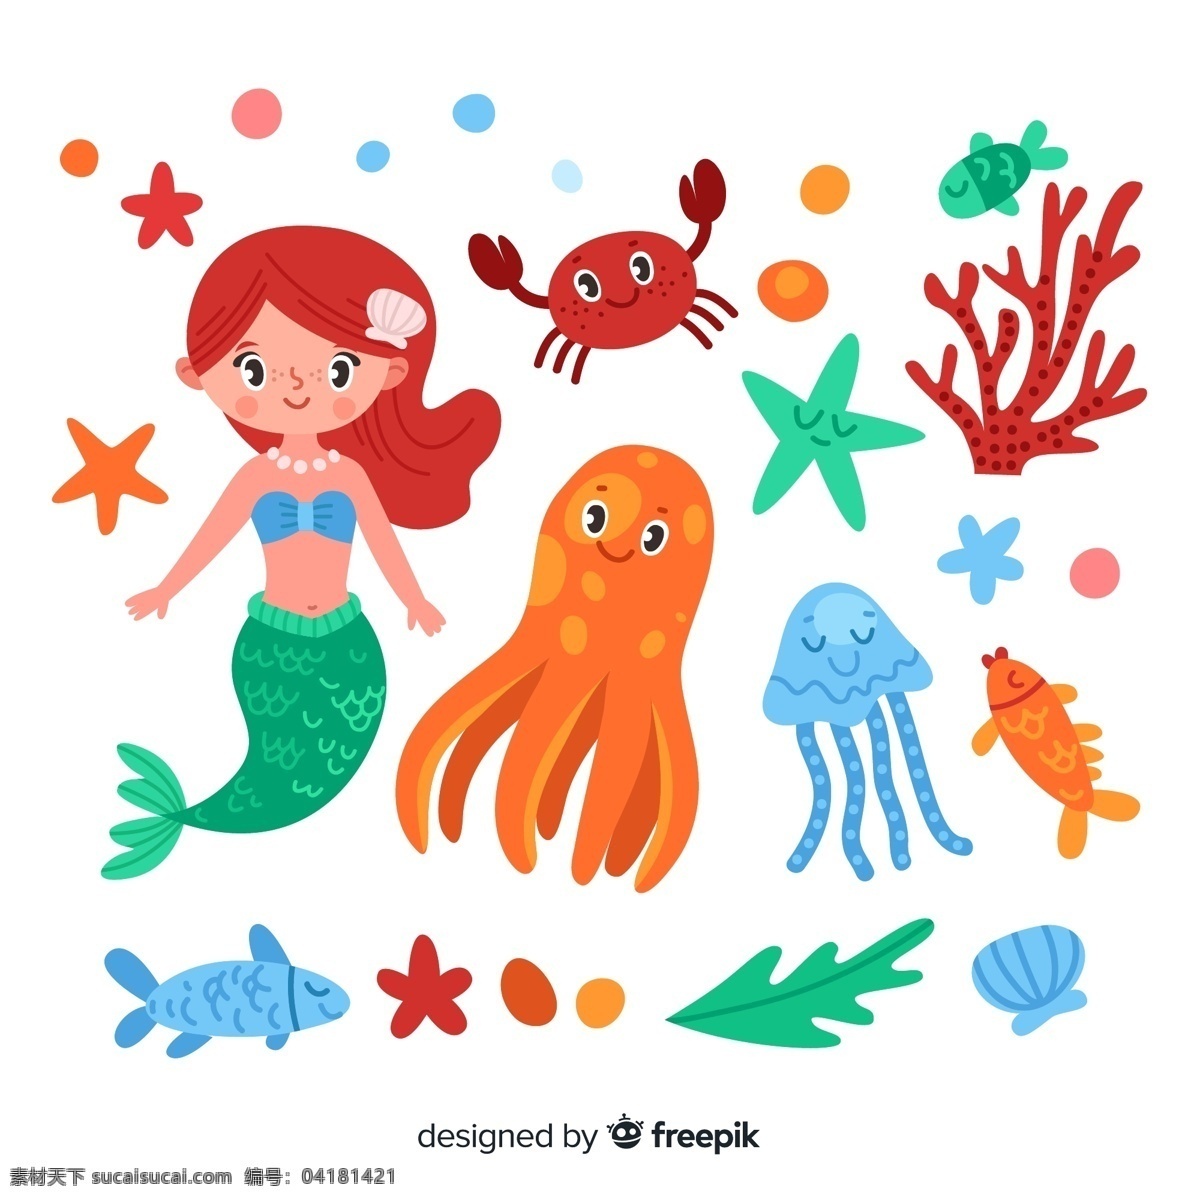 可爱 美人鱼 海洋 动物 海星 螃蟹 水母 章鱼 珊瑚 海草 生物世界 海洋生物